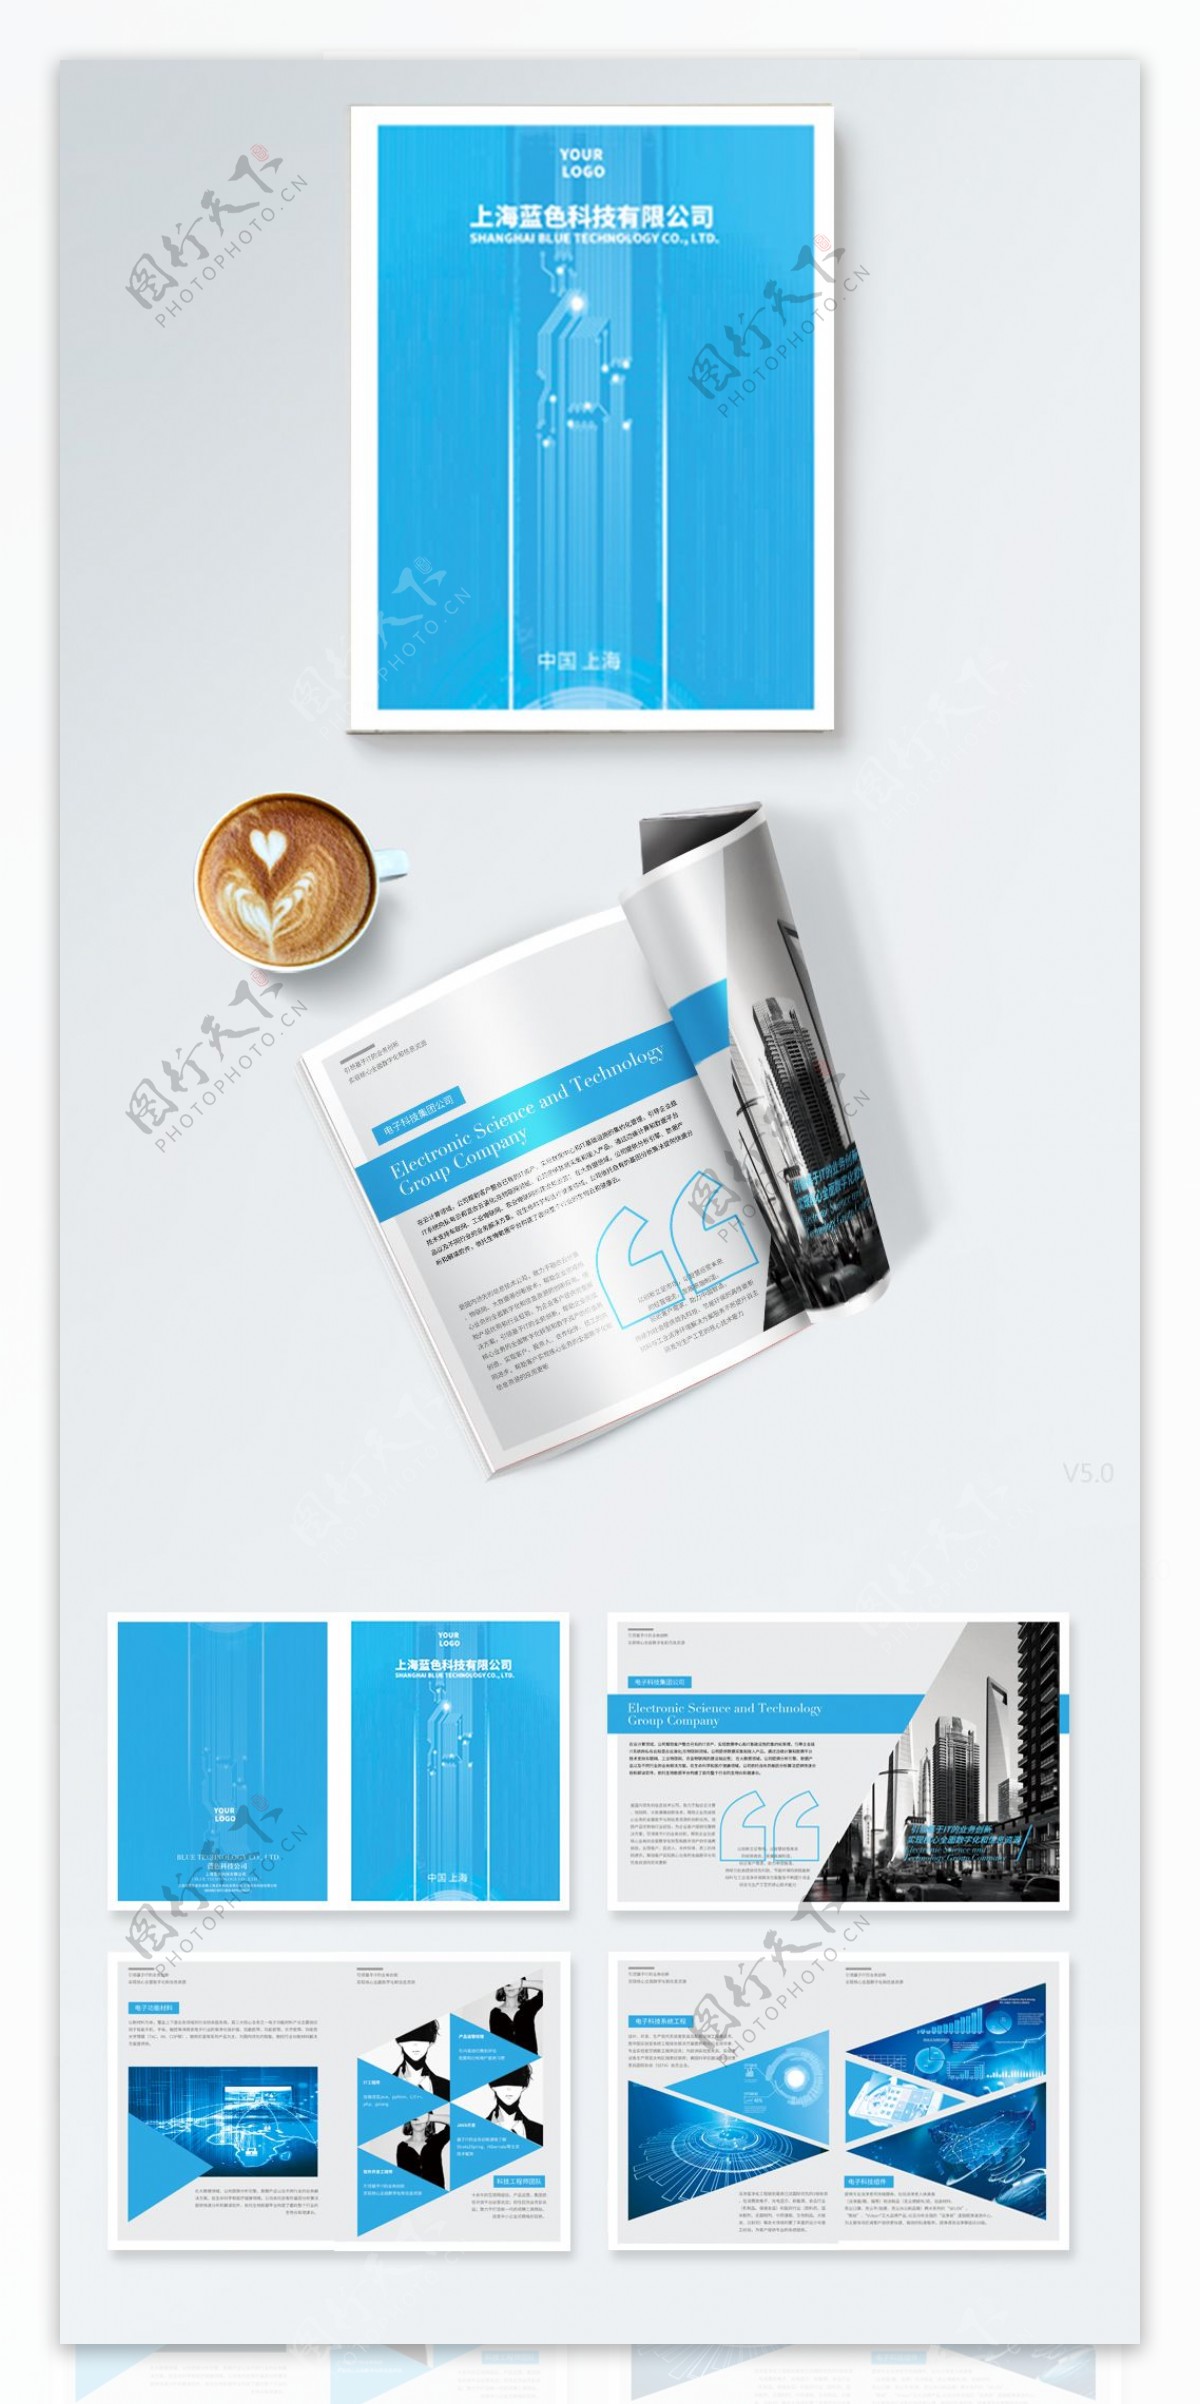 蓝色互联网科技企业画册设计